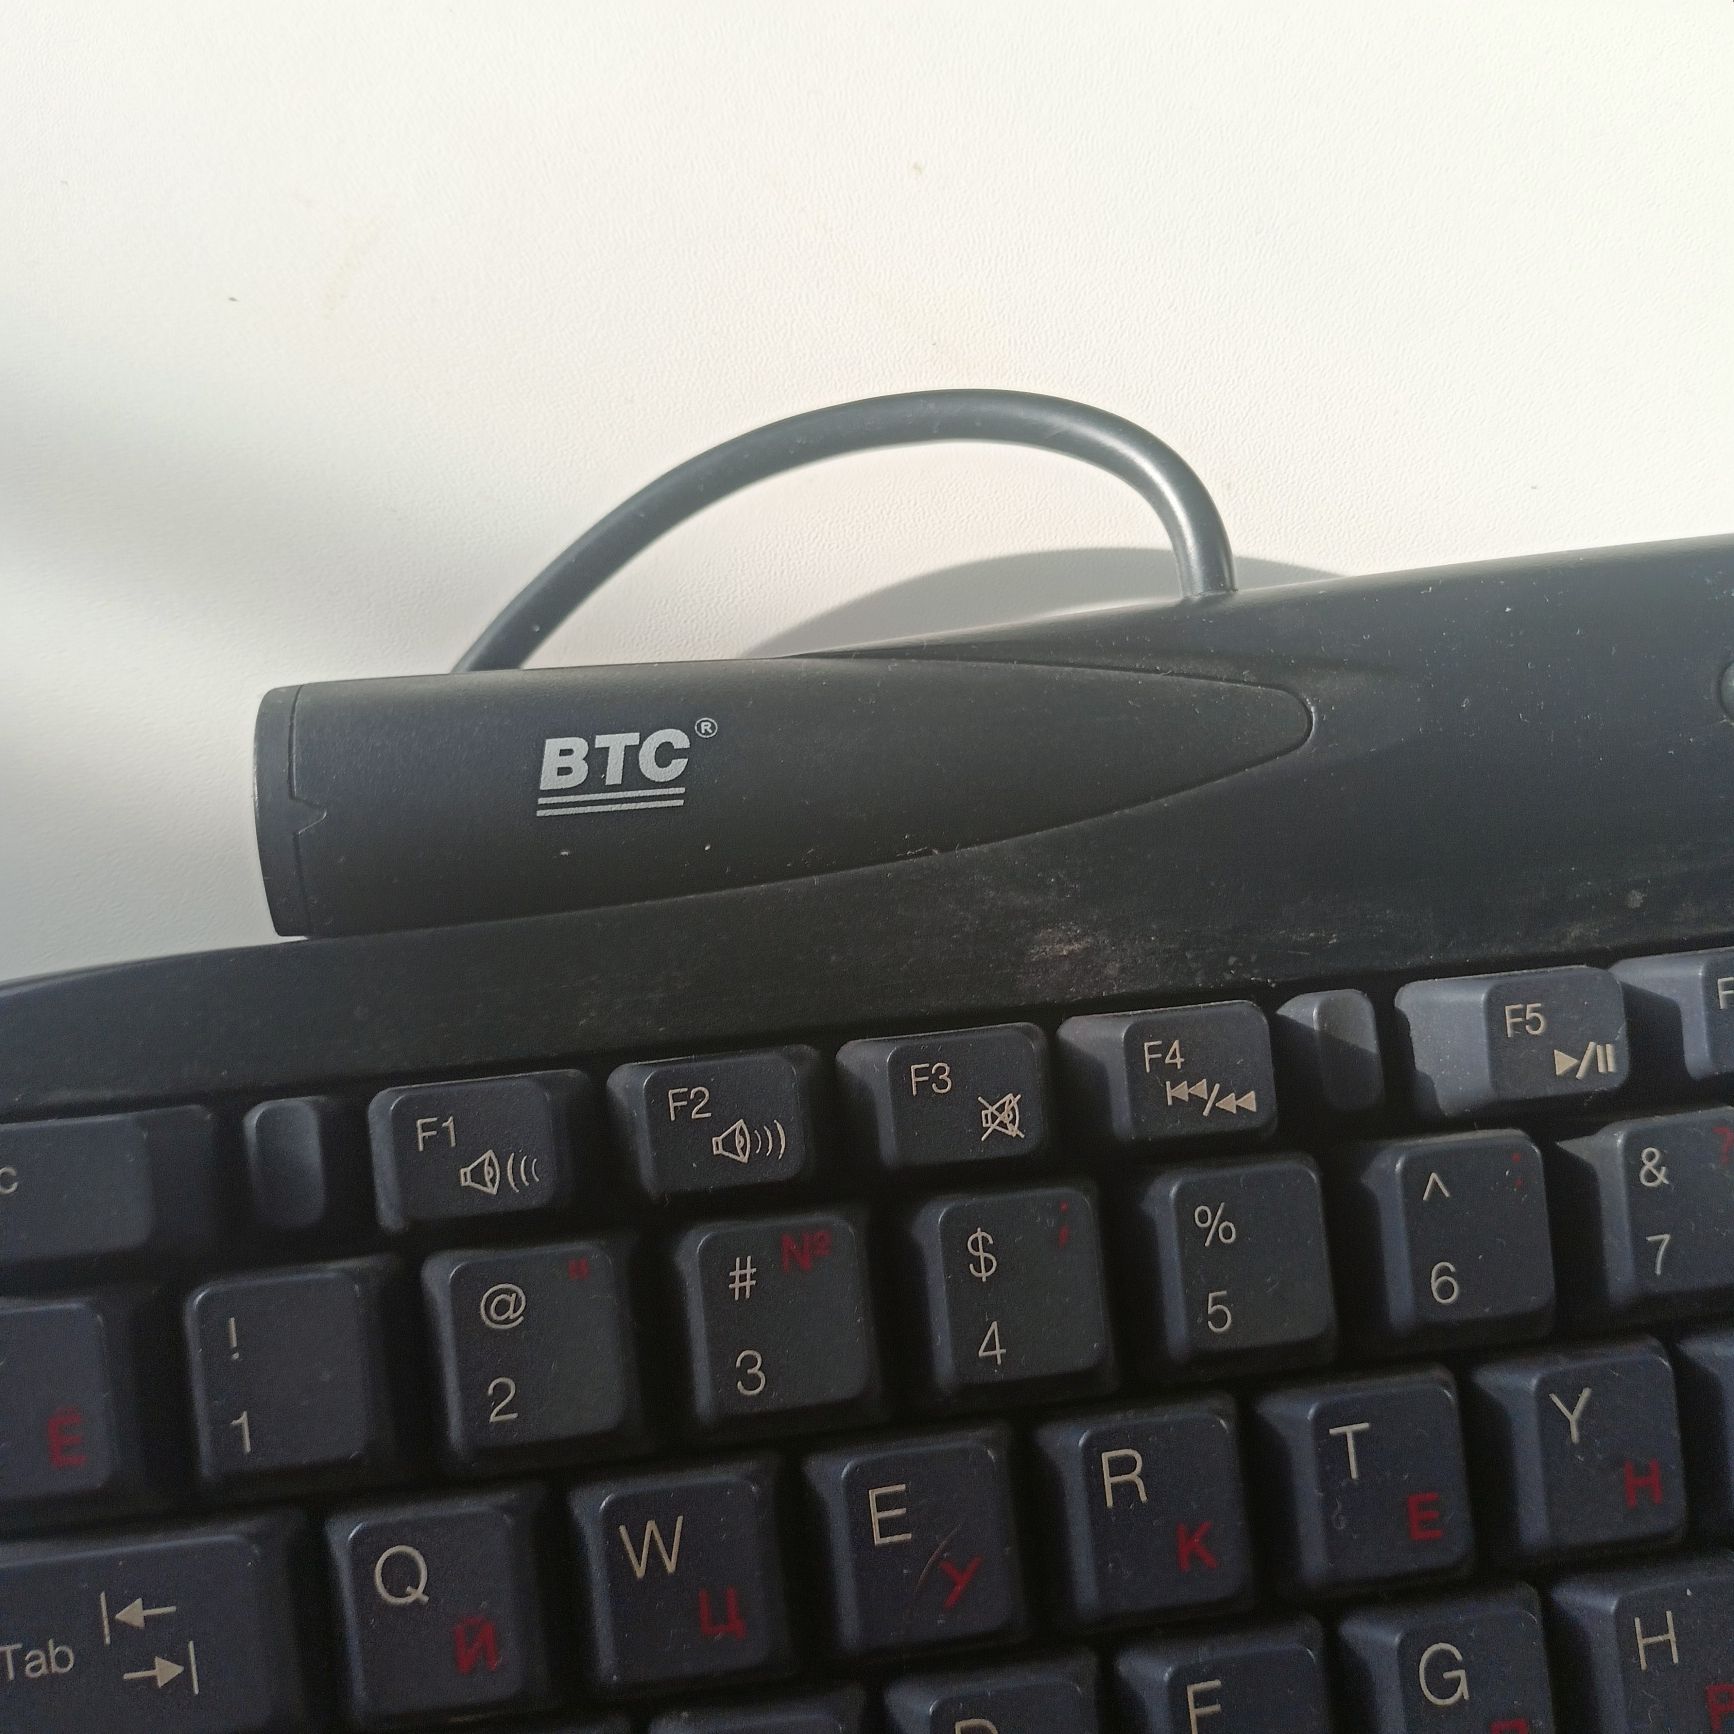 Клавиатура BTC 9110 формата (PS/2) в отличном состоянии